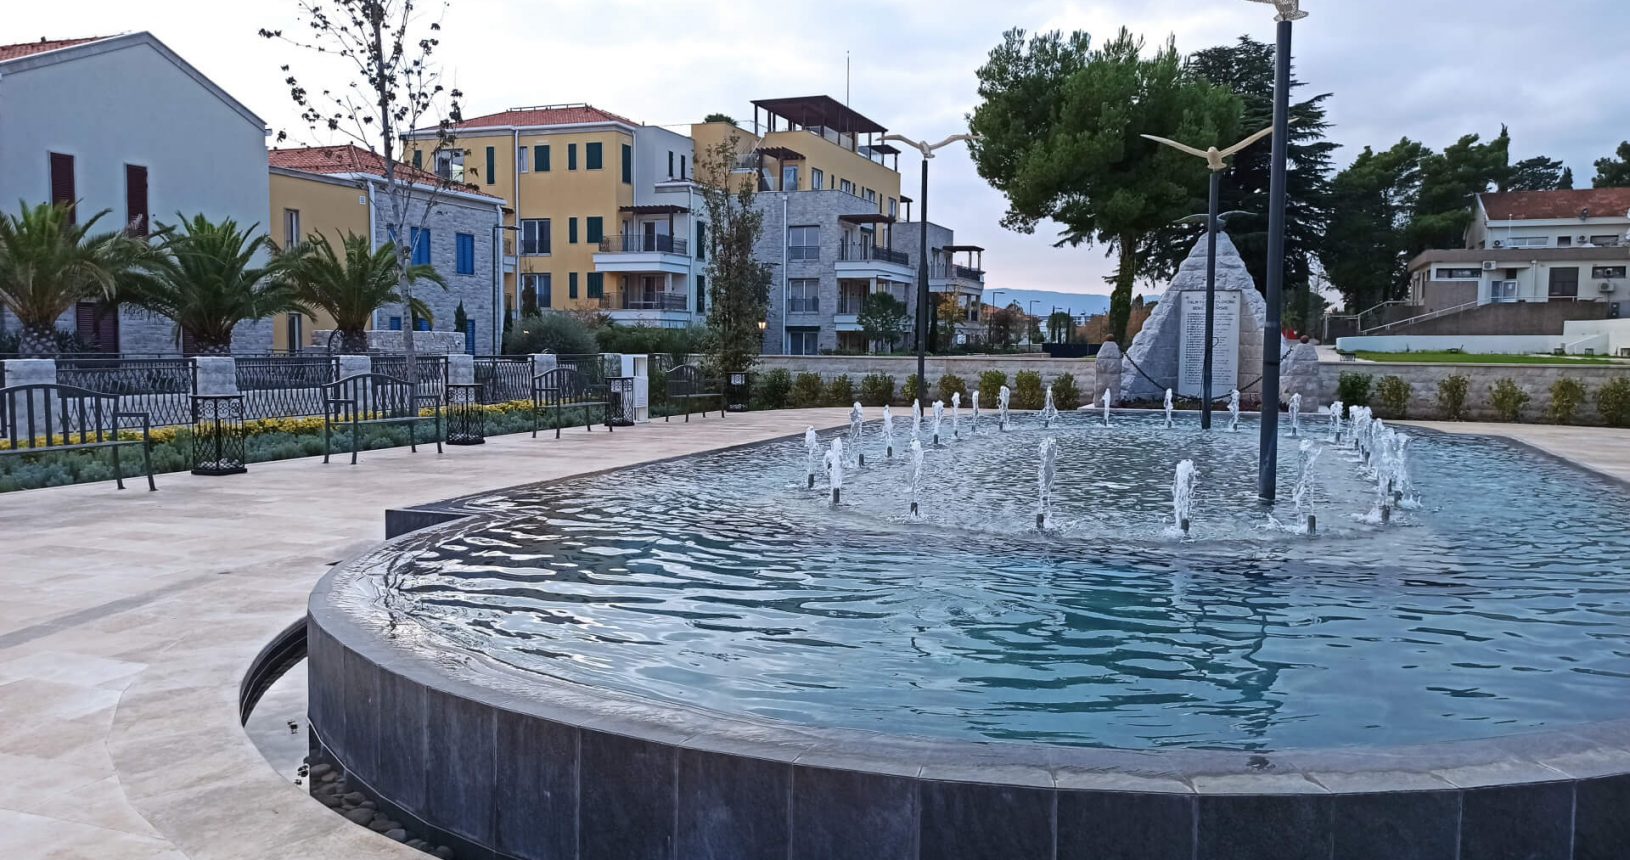 Portonovi fountain in the park